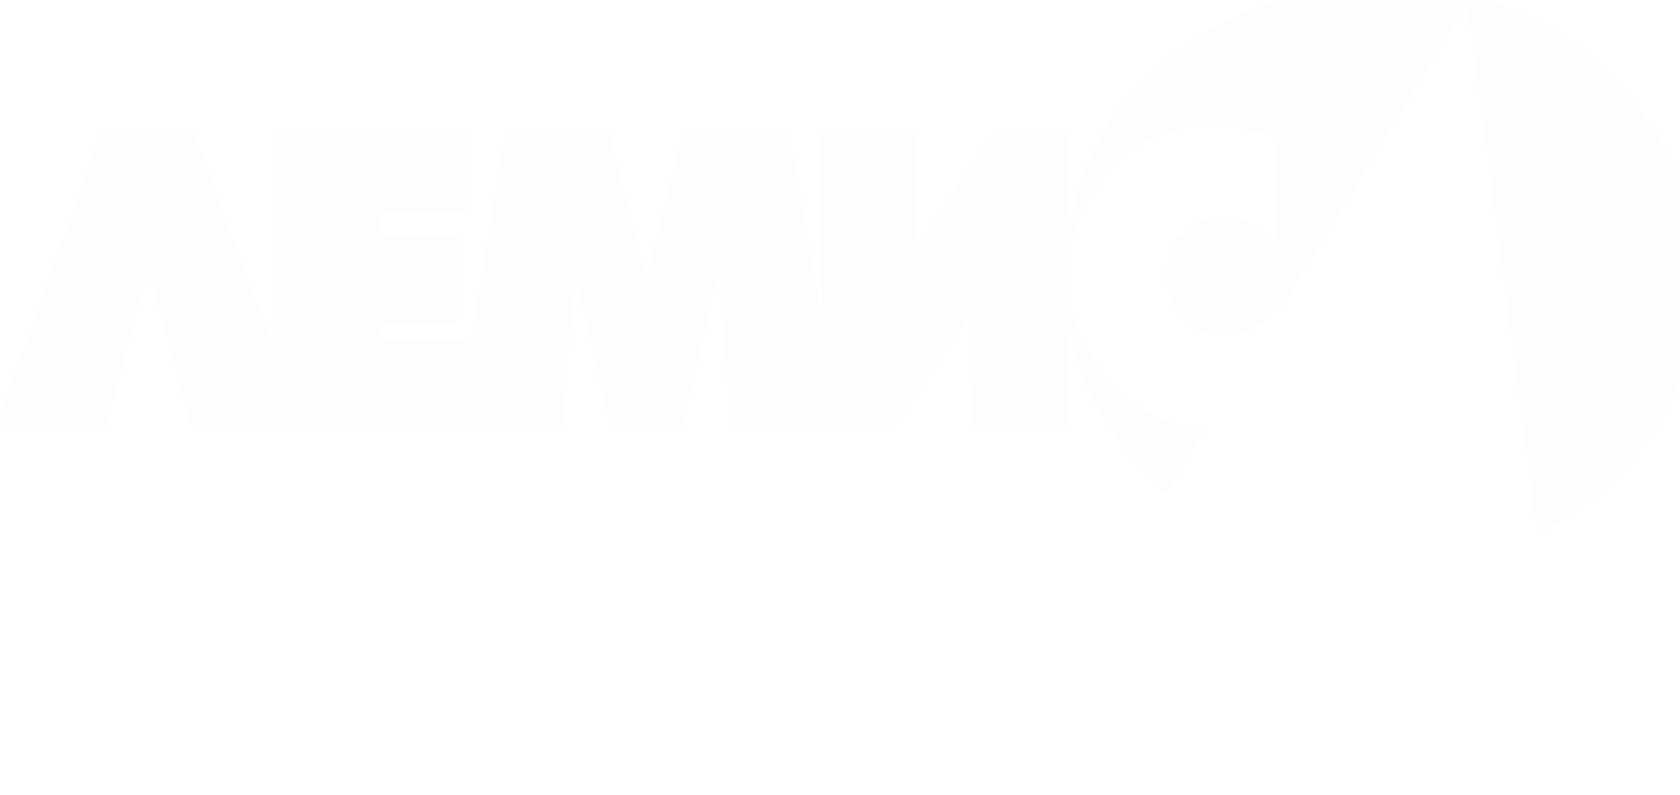 Лого ООО ТД "Лемис" с прозрачным фоном в формате png